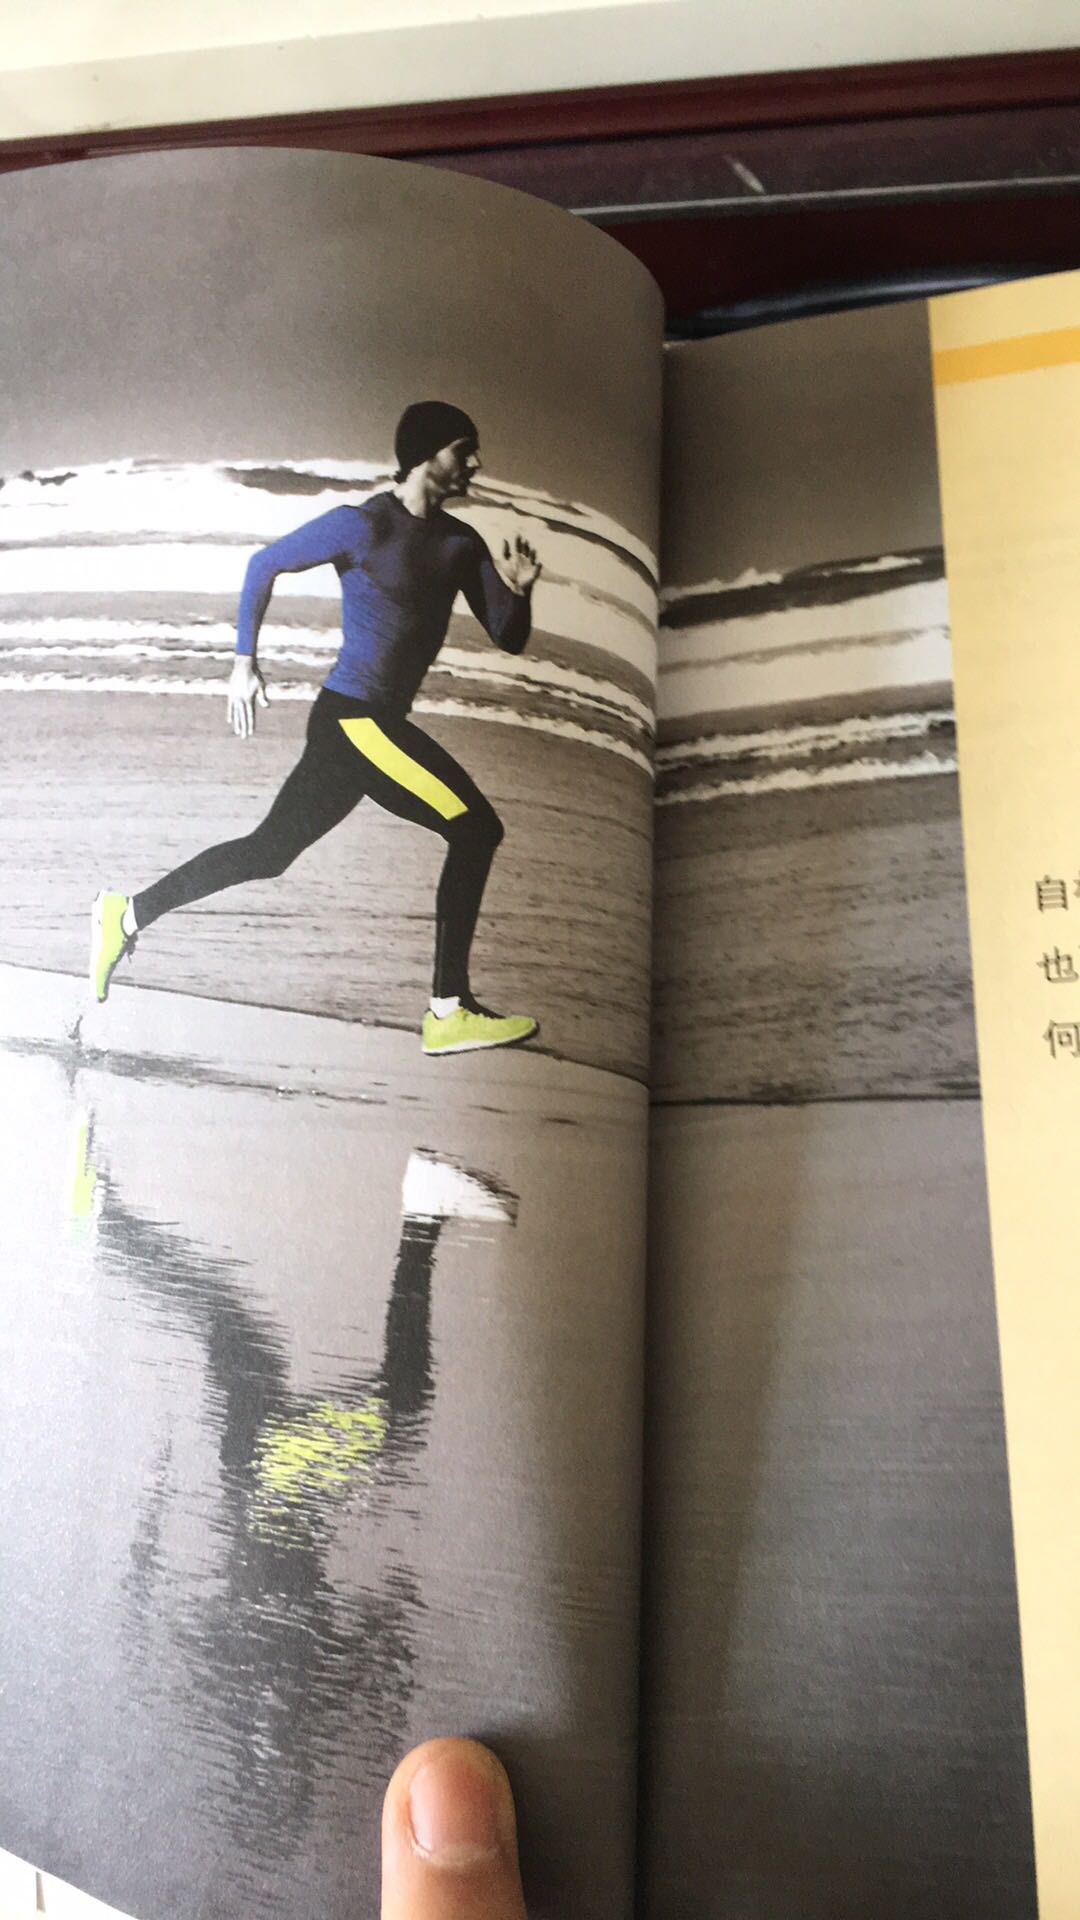 跑步也能写出一本彩页正文内容书，也是很牛逼的。跑步运动讲究很多道道，否则膝盖骨损伤、失水过多……后果很严重。快跑步者的最佳指南！